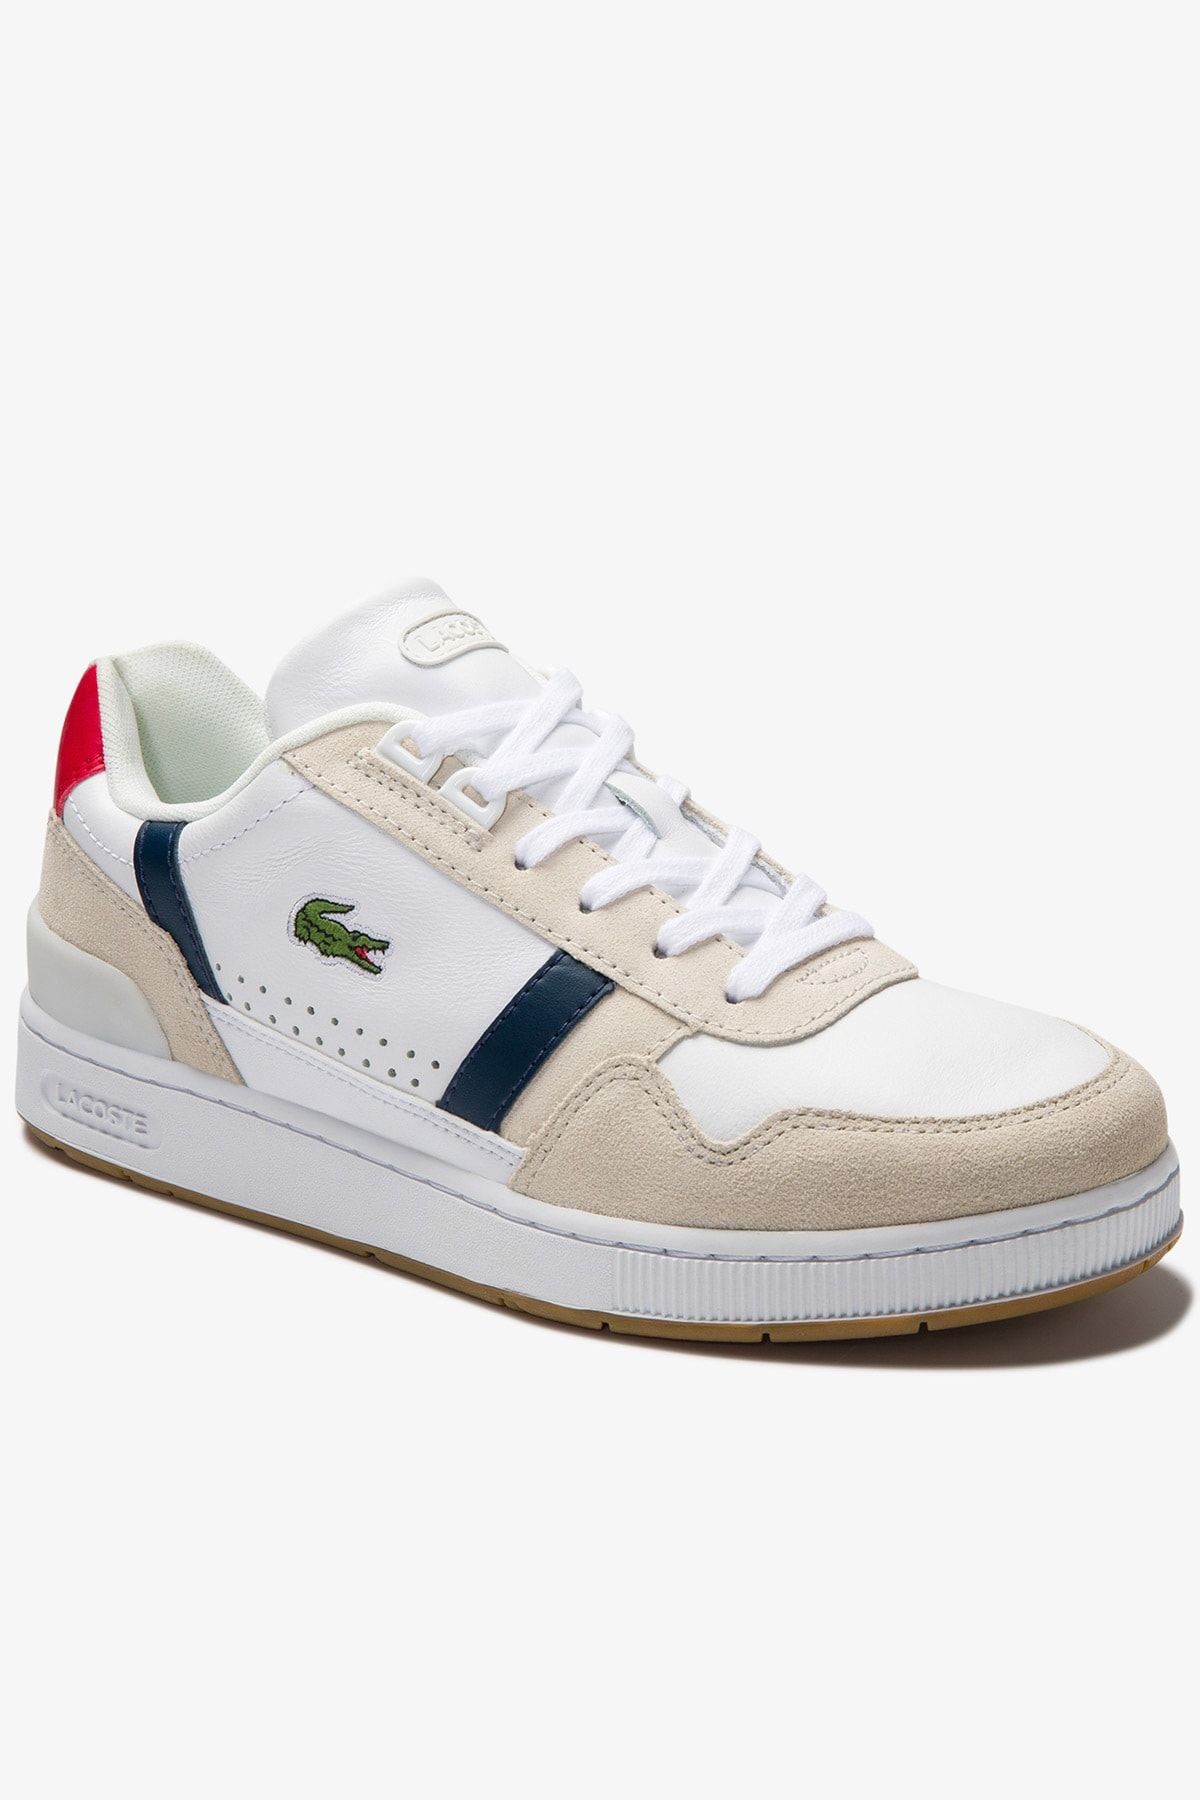 Lacoste T-Clip 0120 2 Sfa Kadın Beyaz Sneaker 740SFA0043